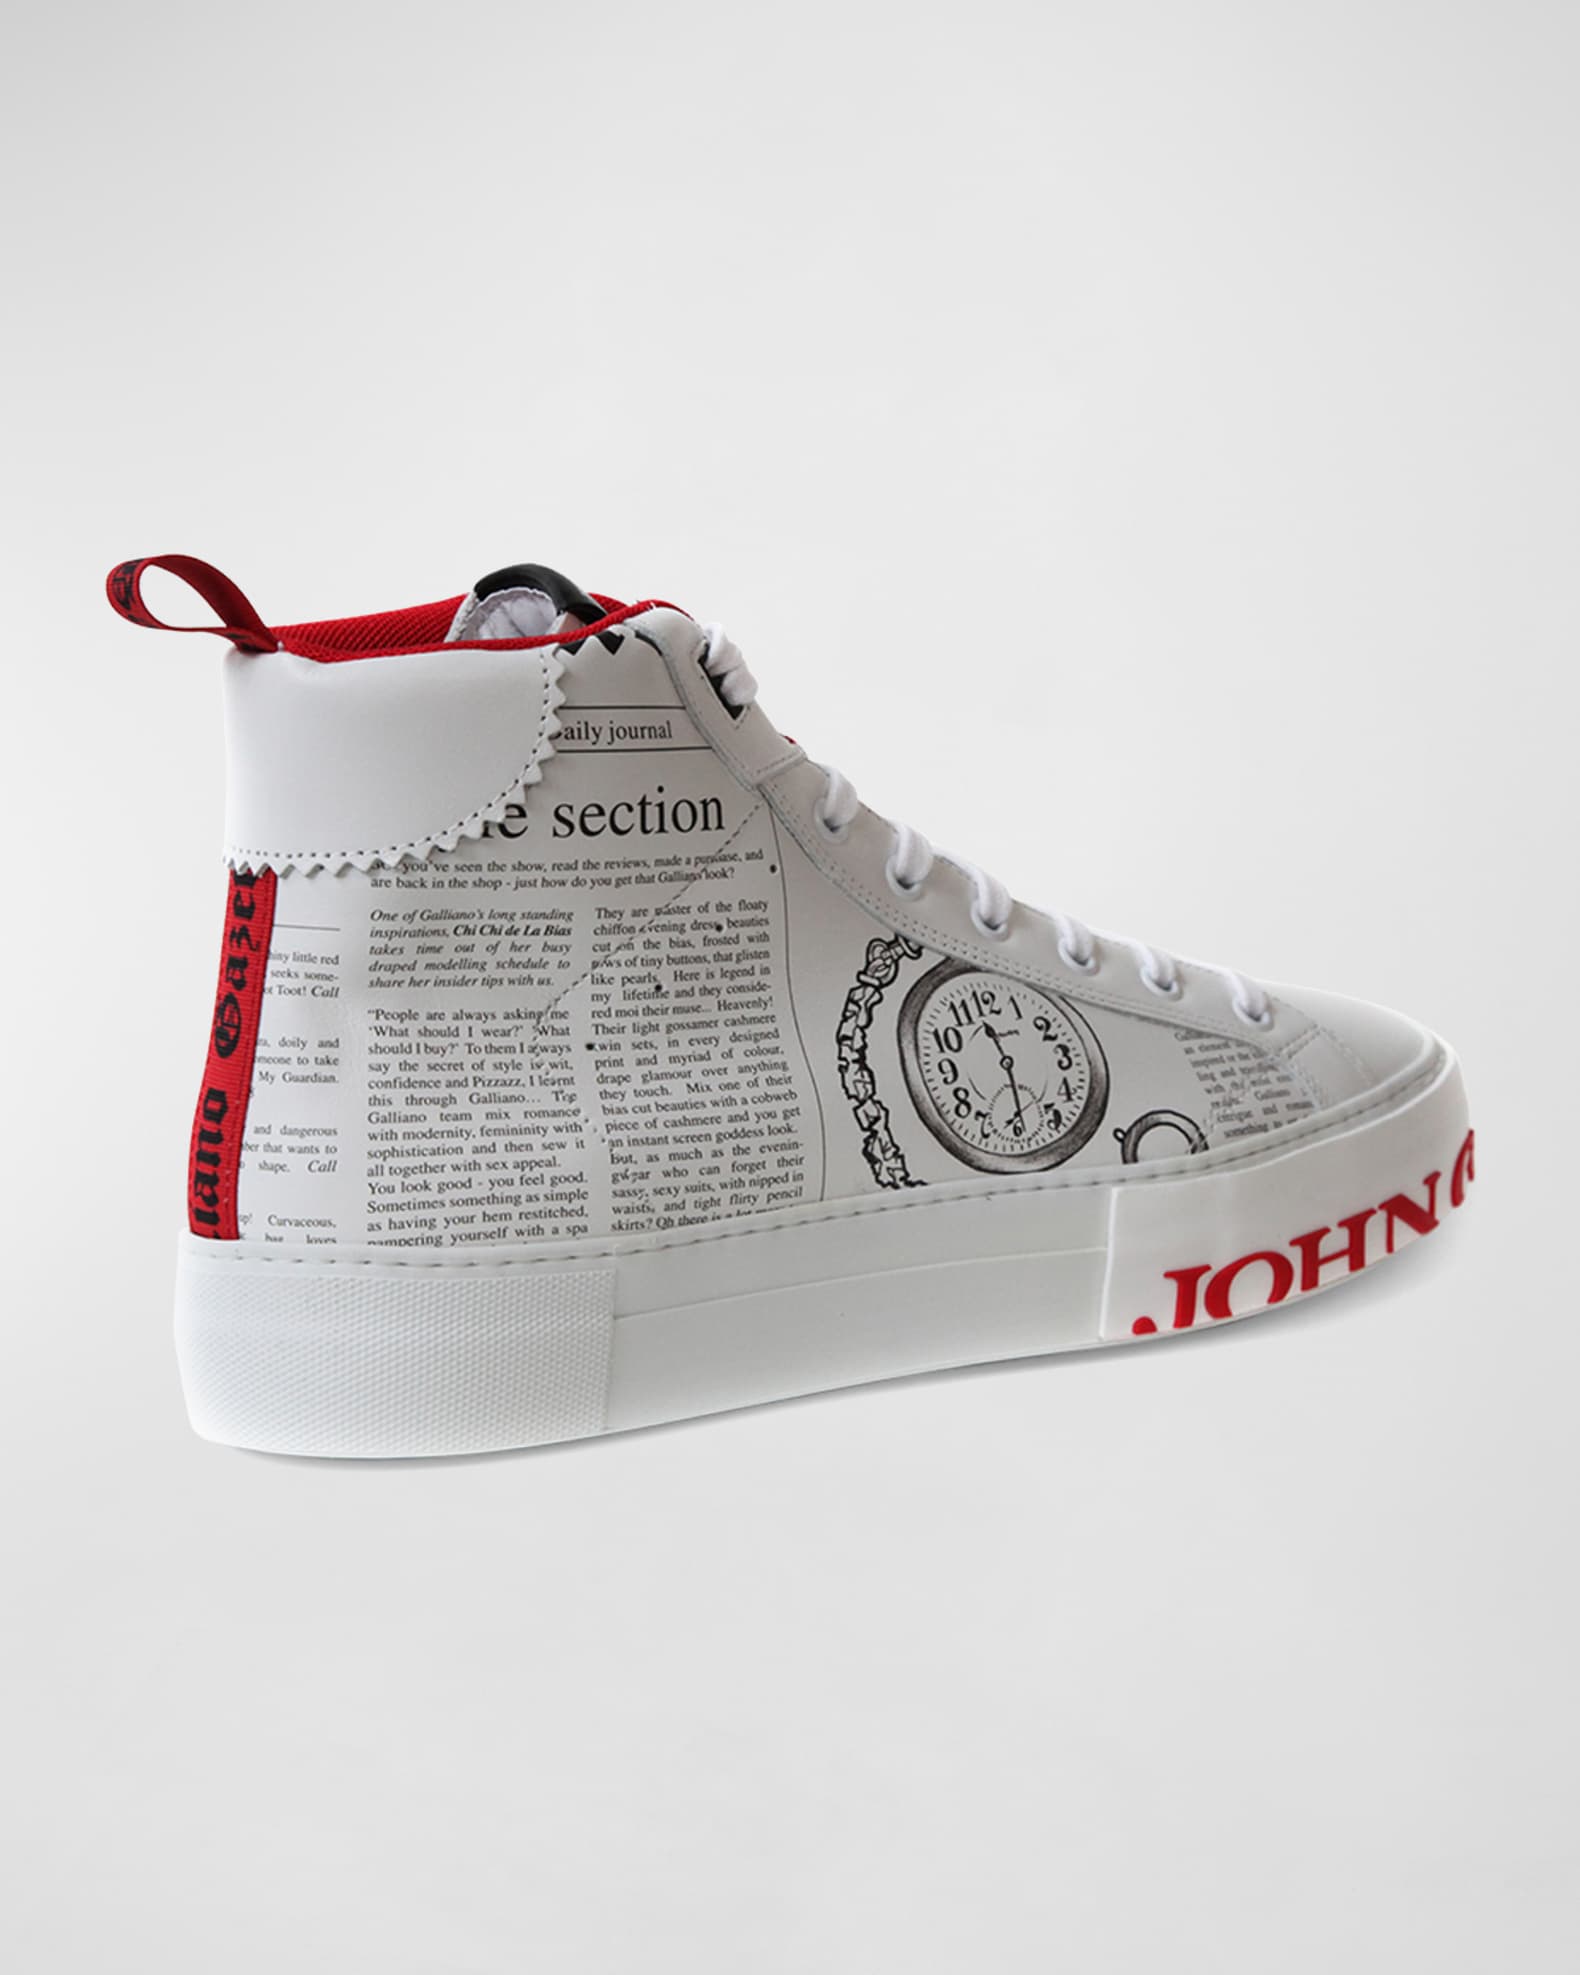 8044 John Galliano Sneakers / Multicolored